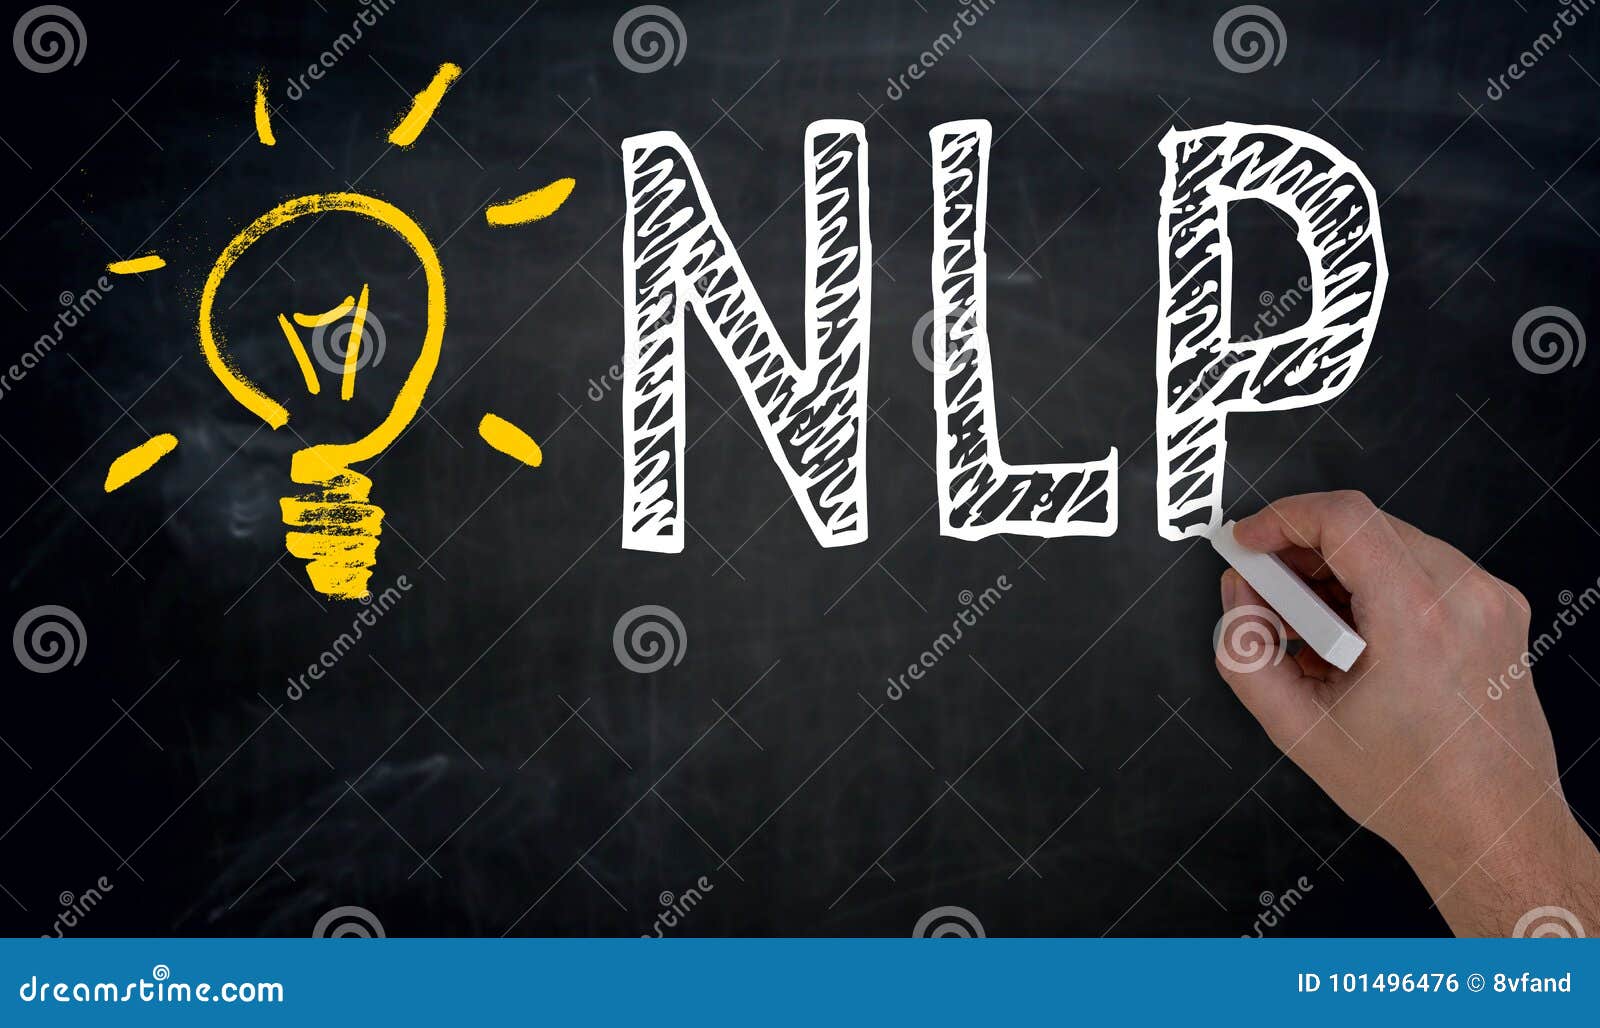 nlp is written by hand on blackboard